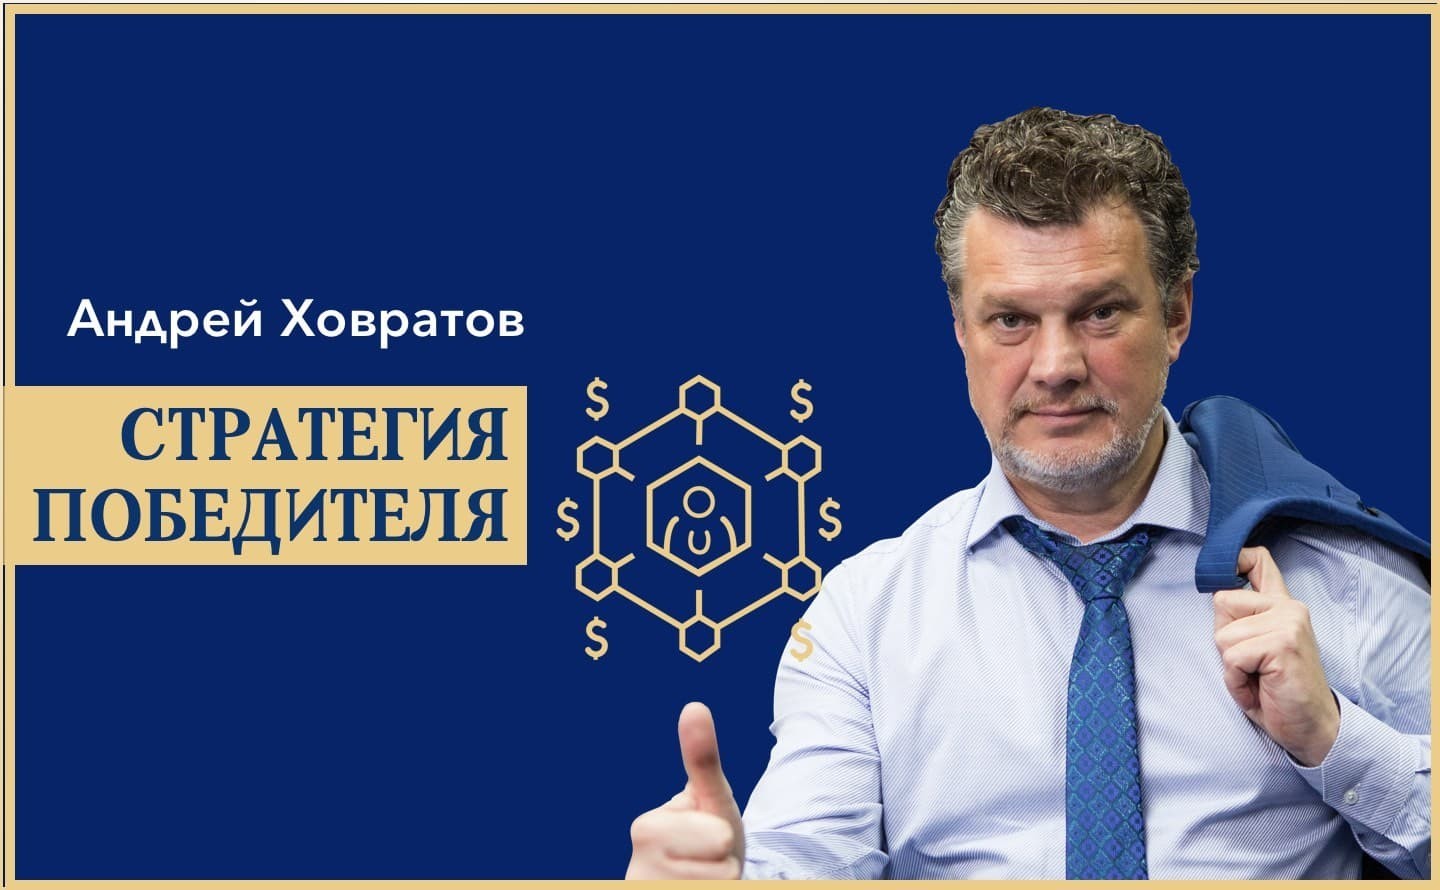 Андрей Ховратов стратегия победителя